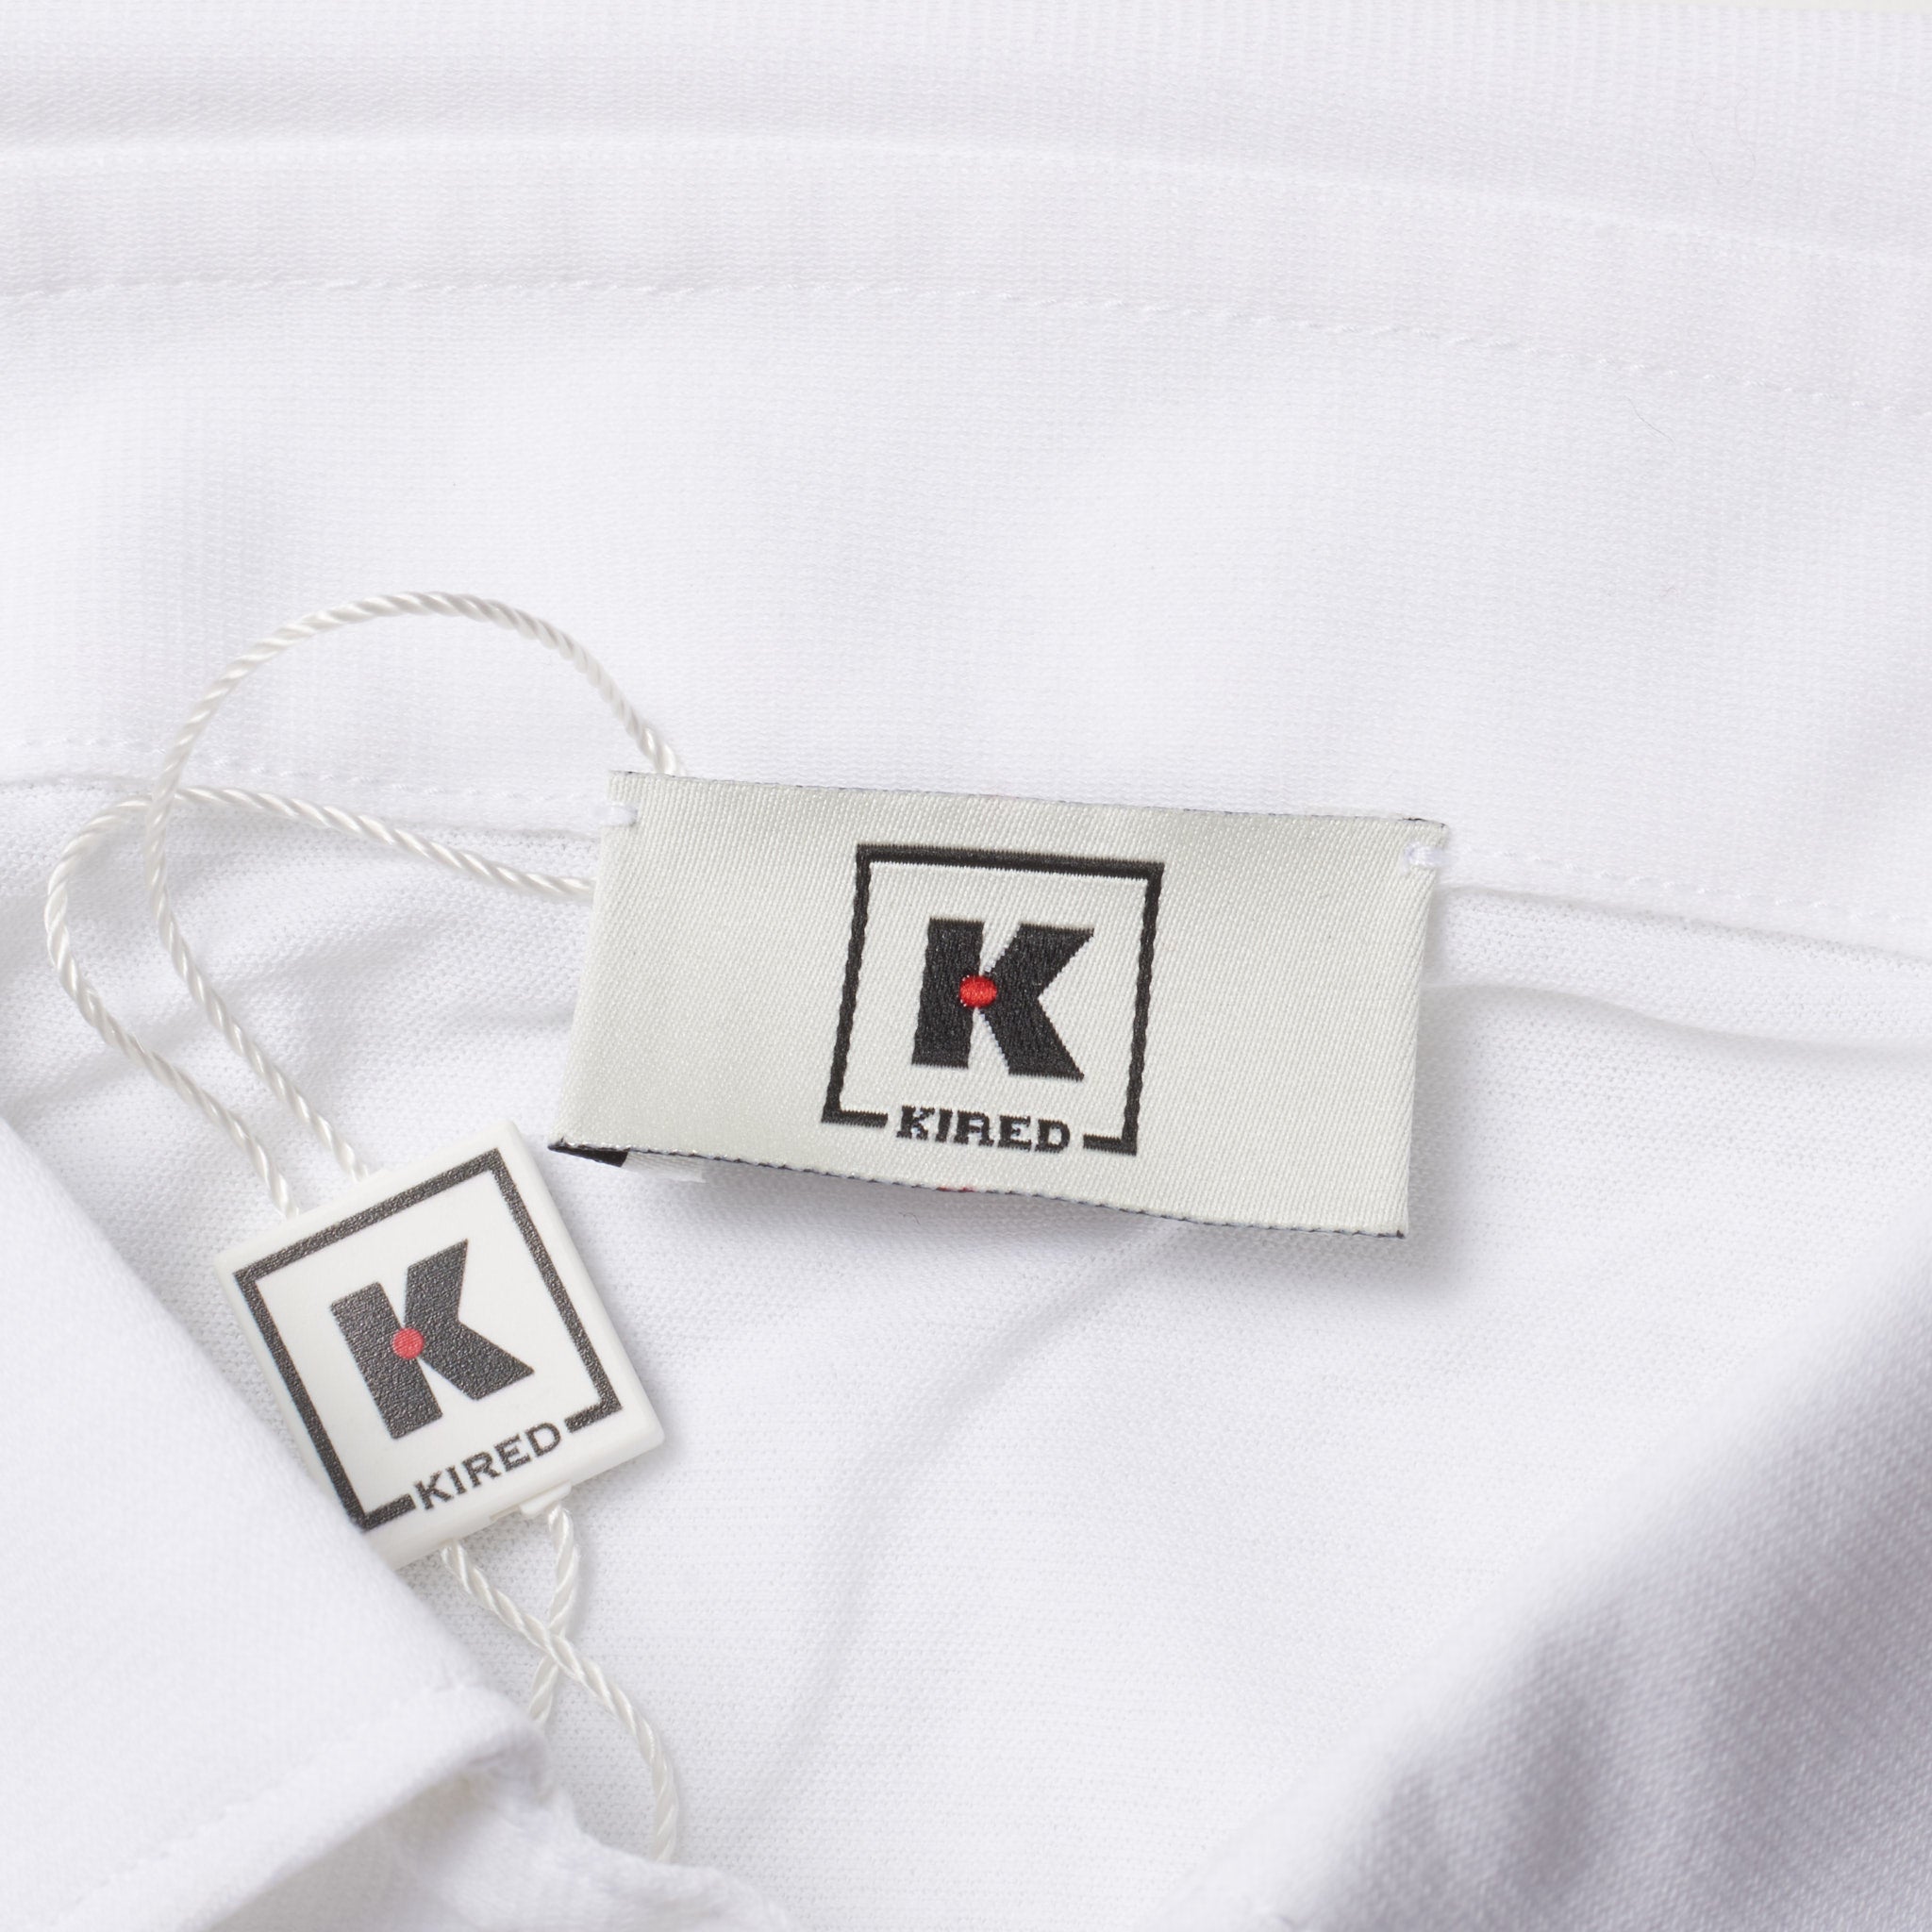 Kiton KIRED "Positano" White Exclusive Crepe Cotton Short Sleeve Polo Shirt NEW XS